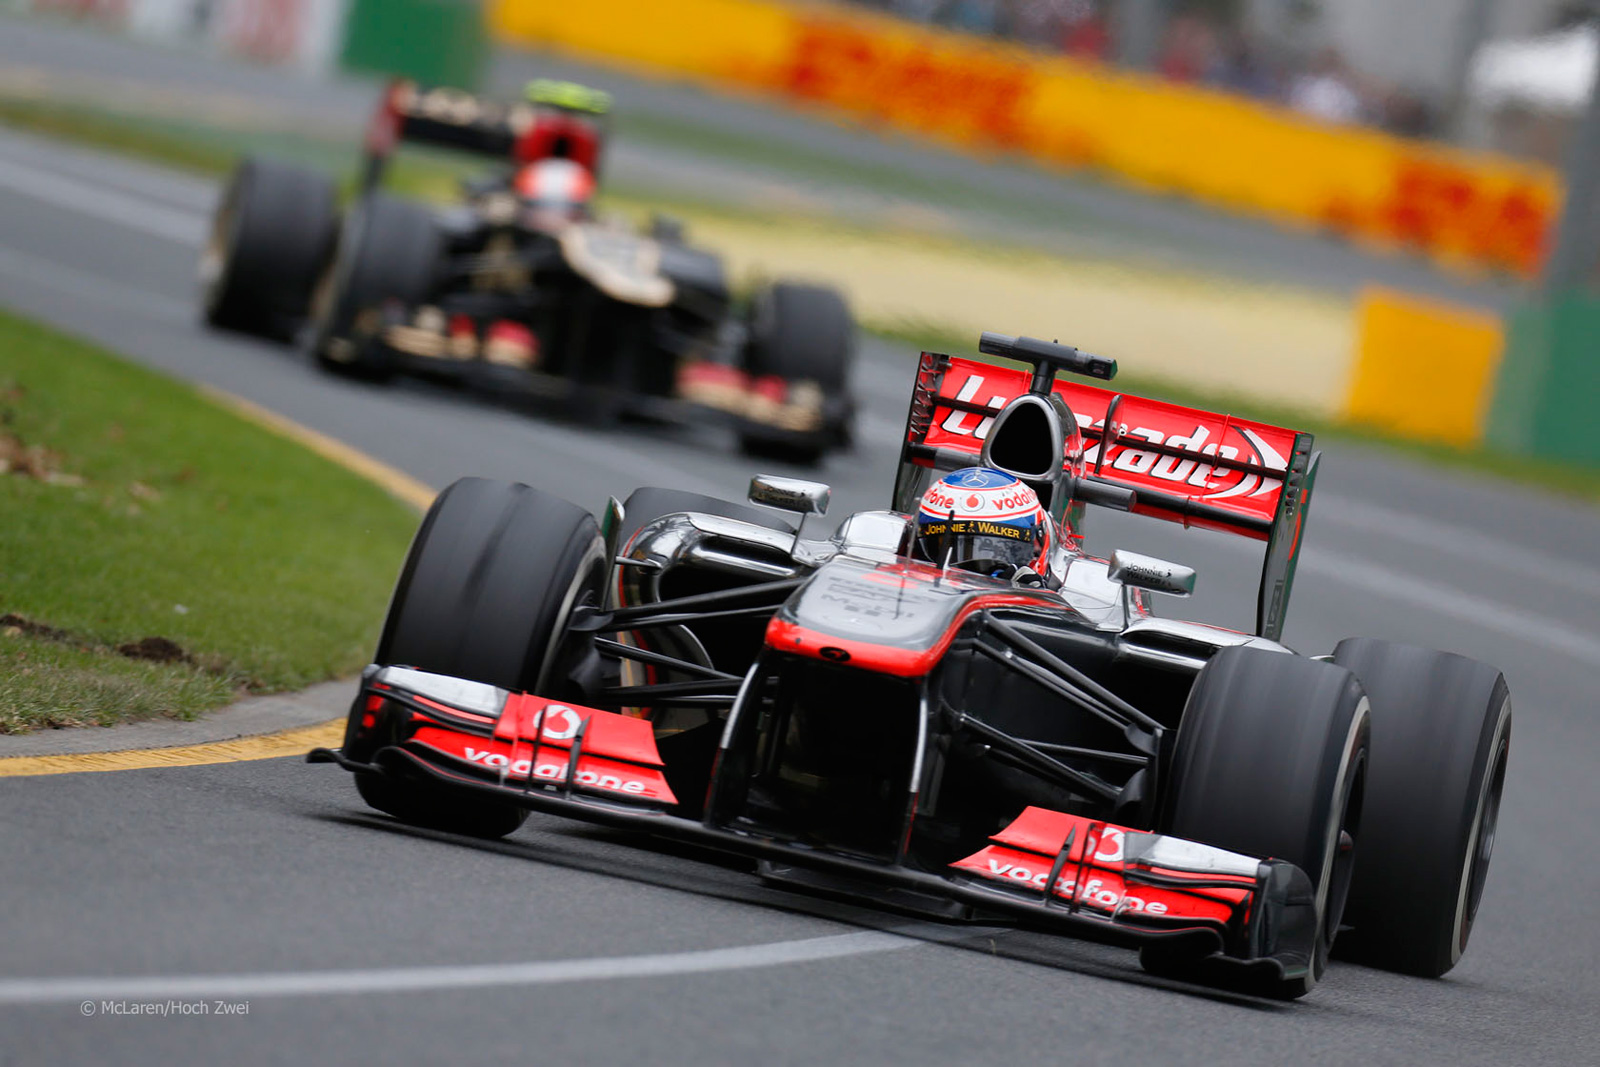 F1 GP Australia dibatalkan minggu ini kerana COVID-19; staf Mclaren disahkan positif, 14-orang dikuarantin